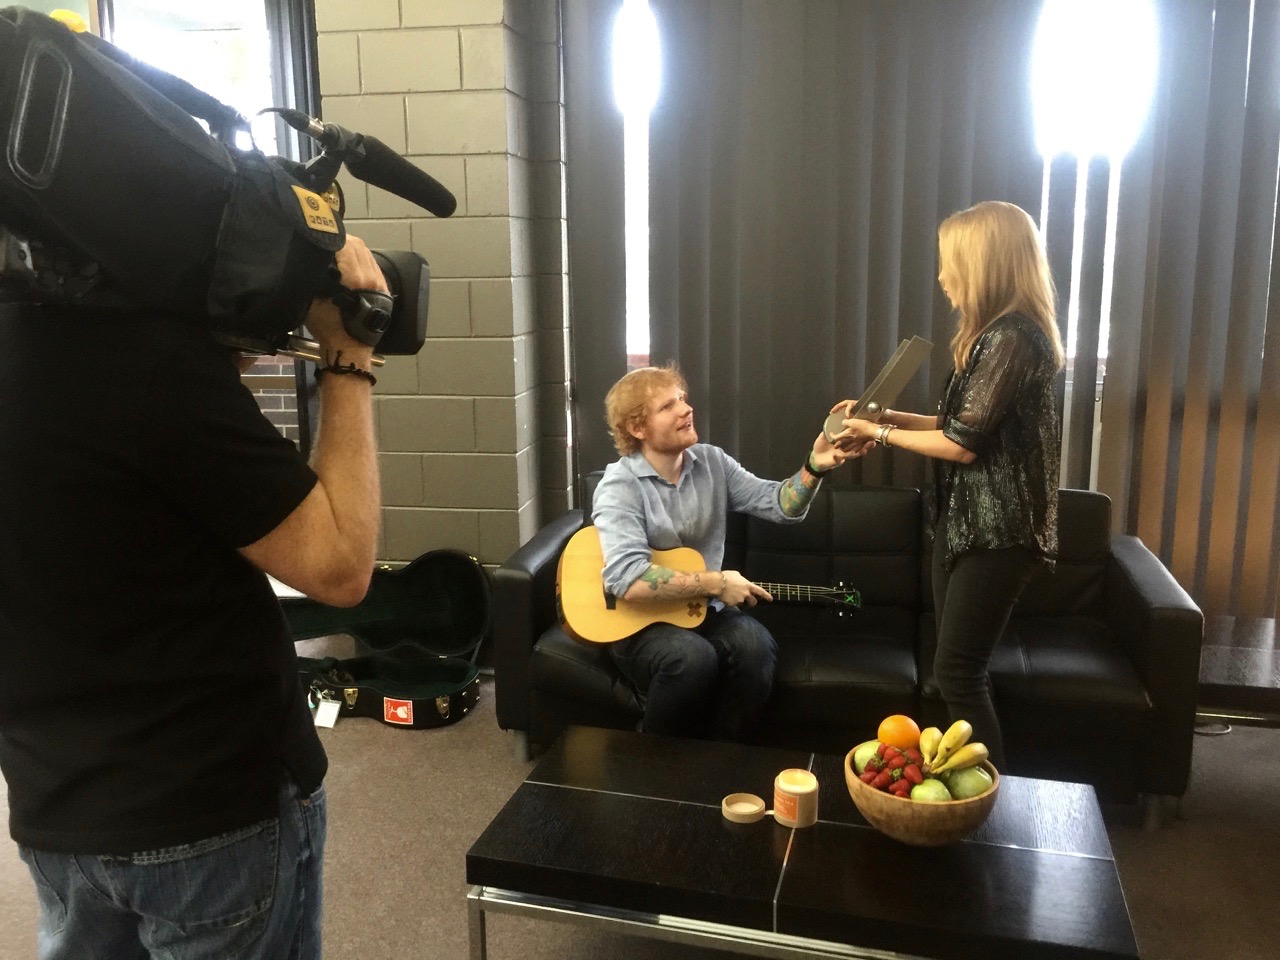  Ed Sheeran and Kylie Minogue shoot&nbsp; 